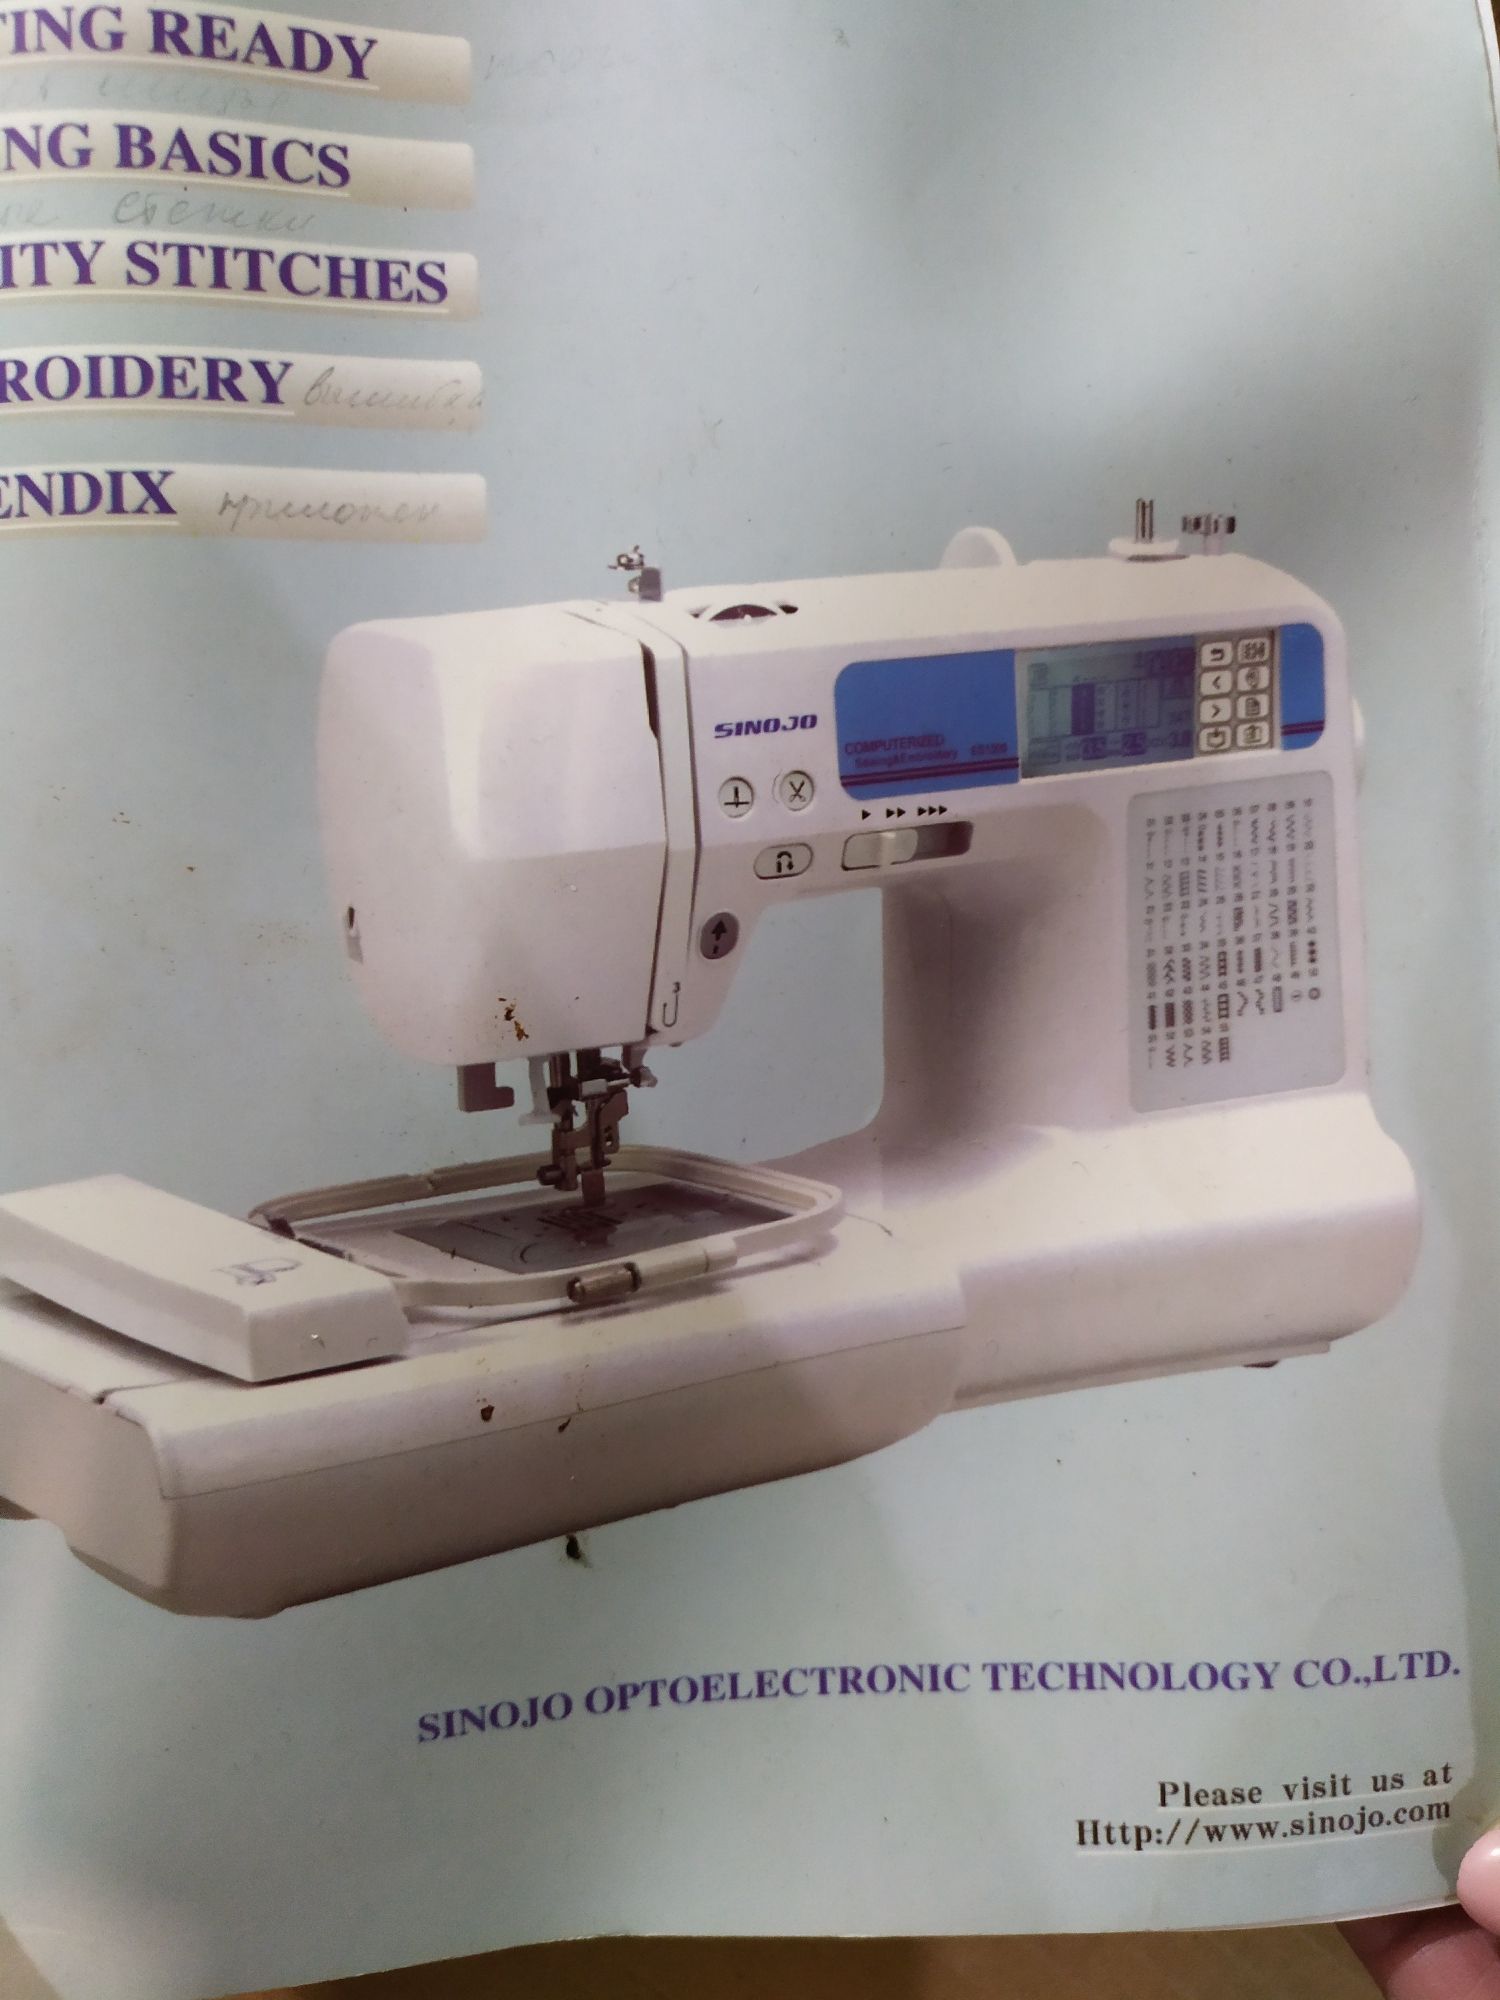 Продам компьютеризированную швейно-вышивальную машину.